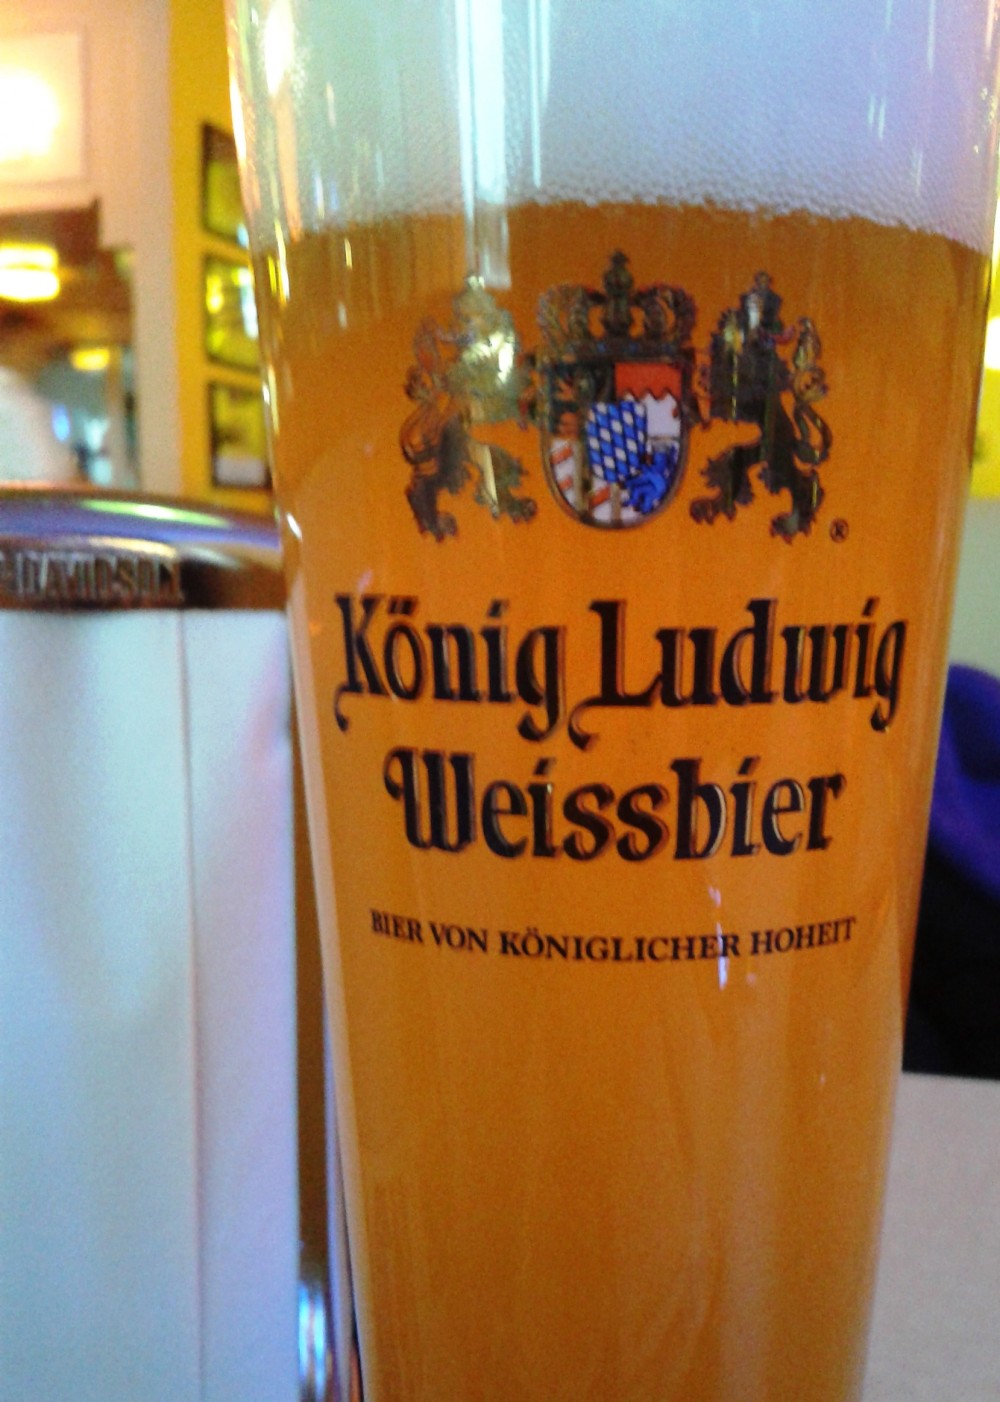 ClockTower - König Ludwig Hefe-Weissbier Alkoholfrei (EUR 3,90) - Clocktower American Bar & Grill - Wien-Süd - Brunn am Gebirge